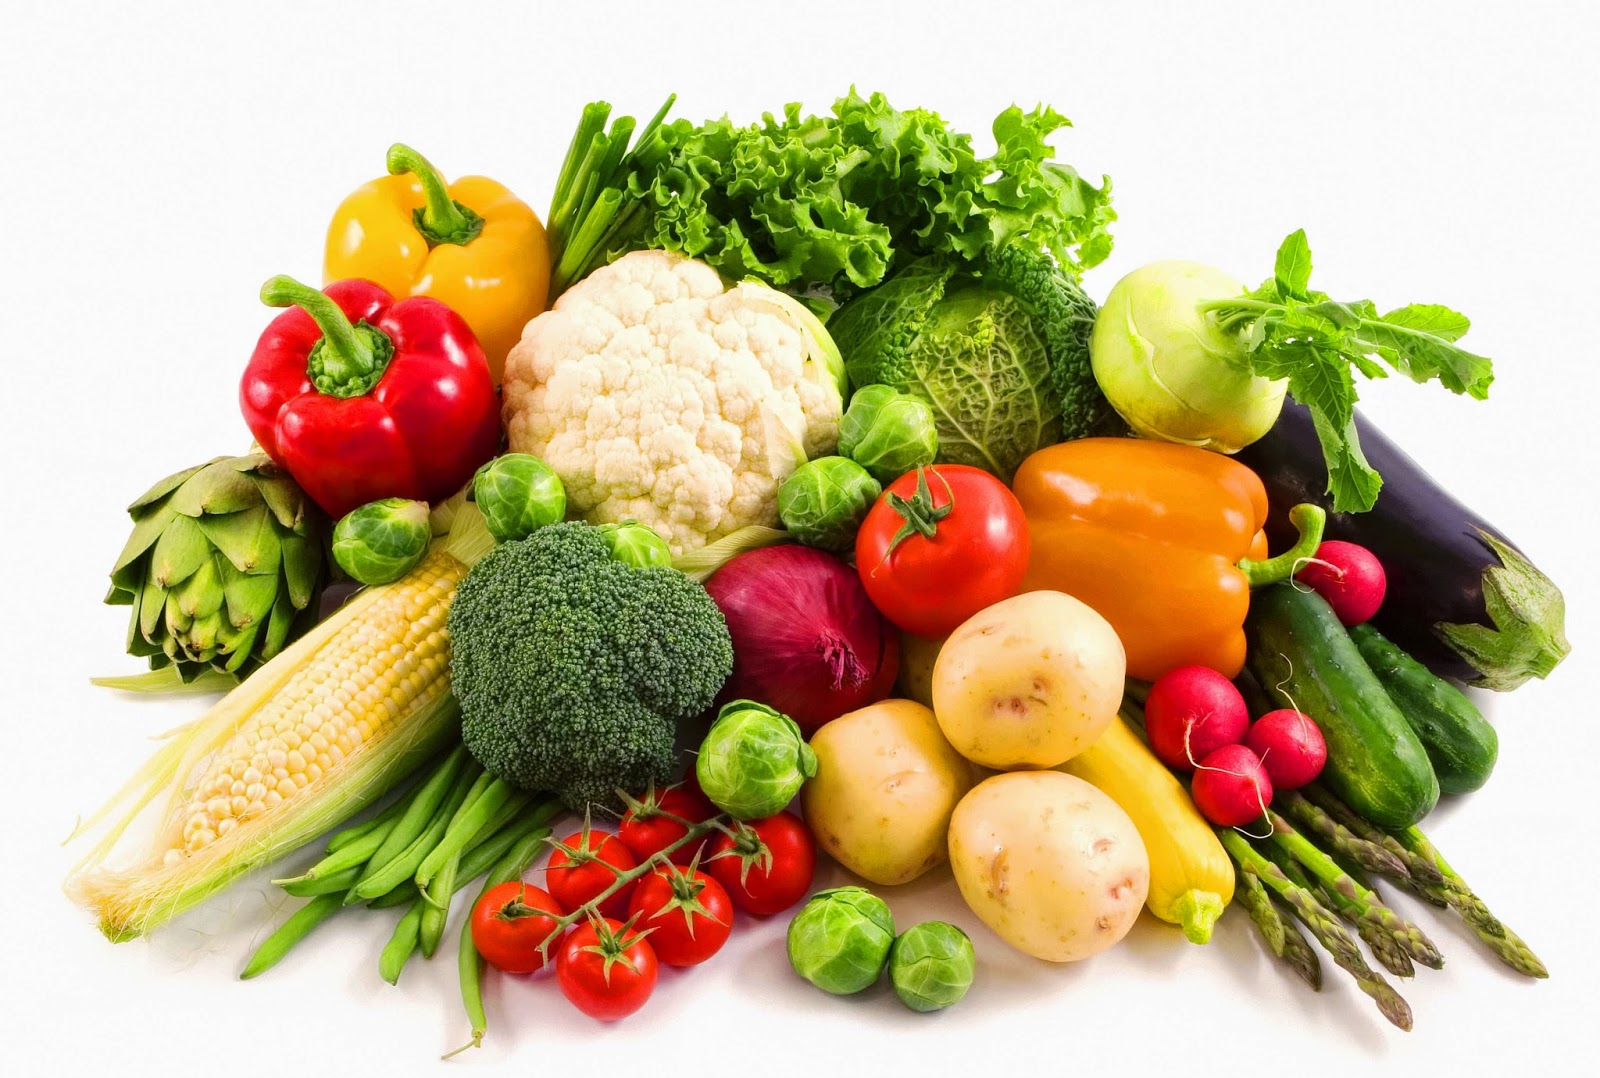 Το νέο λαχανικό διασταύρωση κουνουπιδιού και μπρόκολου είναι θησαυρός βιταμινών και… νόστιμο (βίντεο)